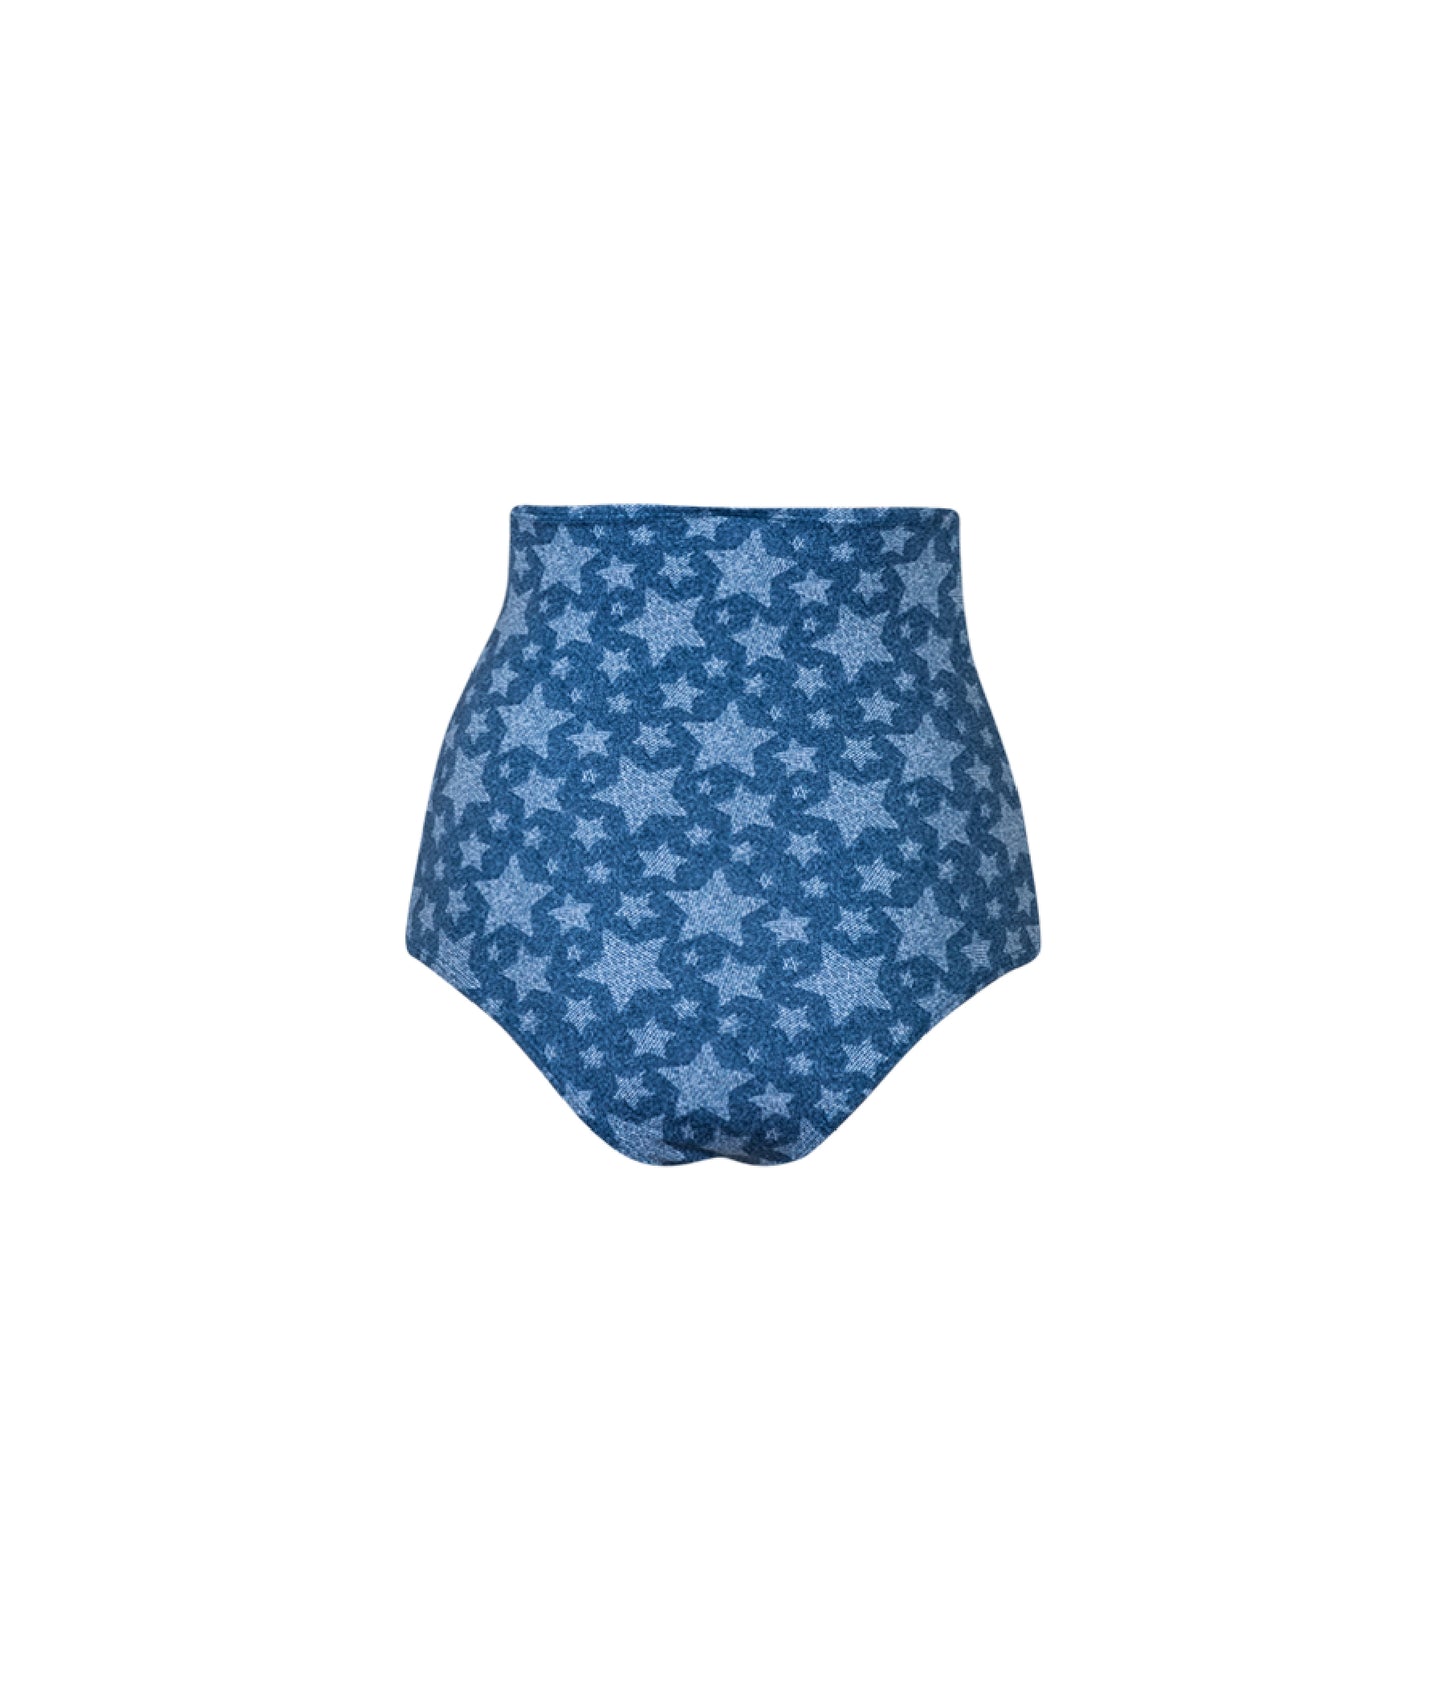 Verdelimon - Bikini Bottom - Tottori - Printed - Denim Strars - Back